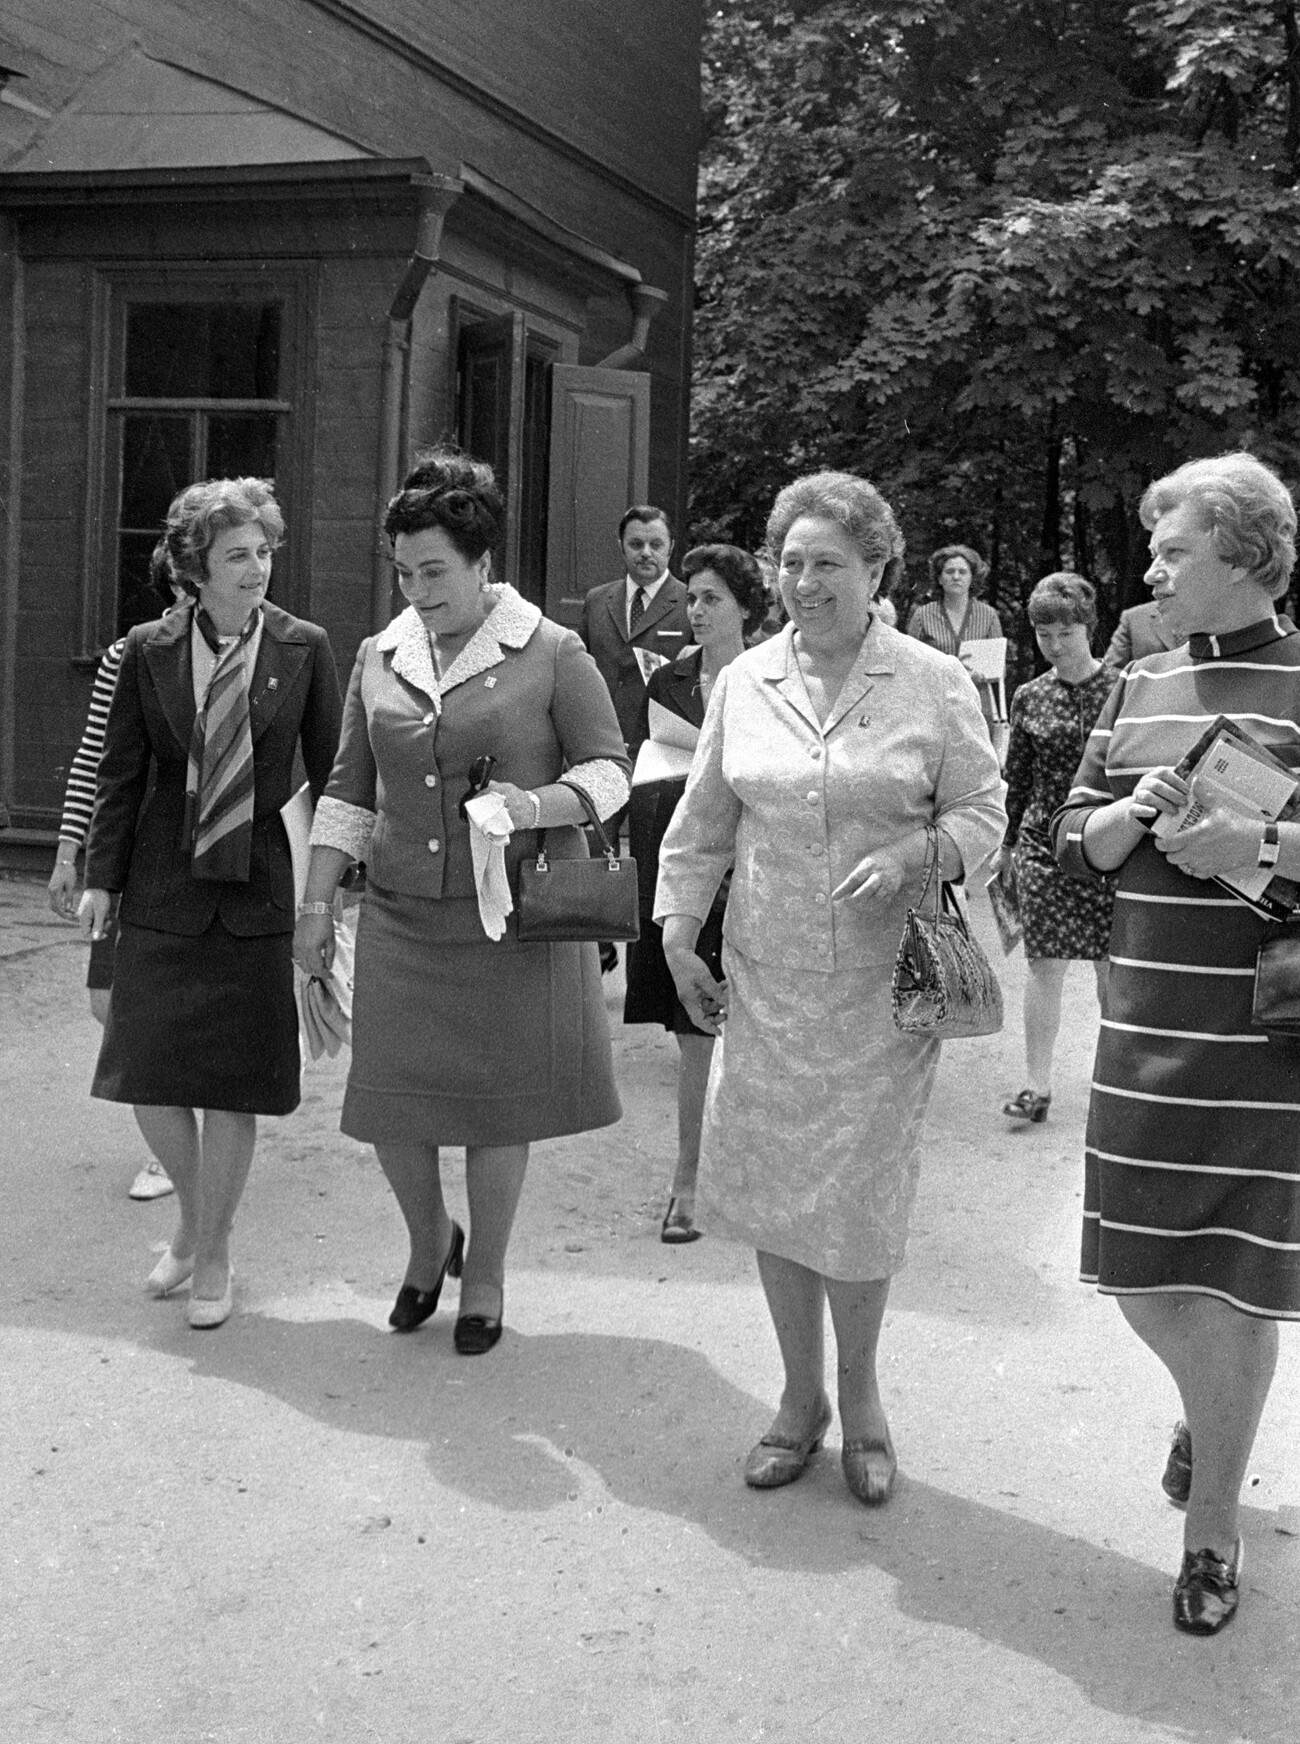 Jovanka Broz, istri Presiden Yugoslavia, kedua dari kiri, dan Viktoria, istri Leonid Brezhnev, kedua dari kanan, di kawasan museum Leo Tolstoy pada kunjungan Josip Broz Tito ke Moskow.